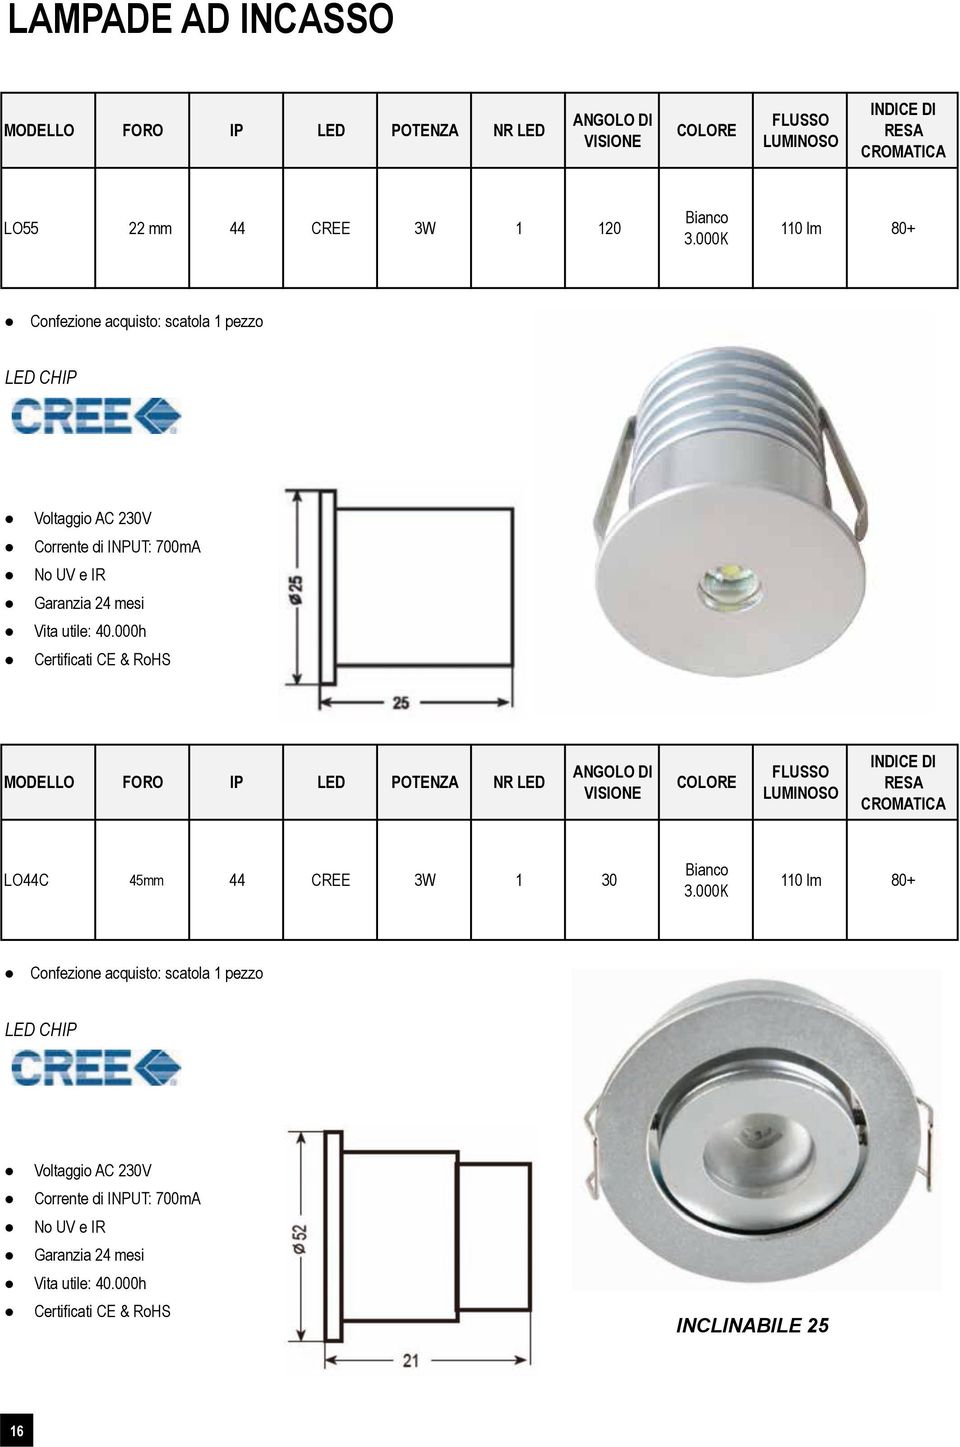 Vita utile: 40.000h Certificati CE & RoHS MODELLO FORO IP LED POTENZA NR LED LO44C 46 45mm mm 44 CREE 3W 1 30 3.